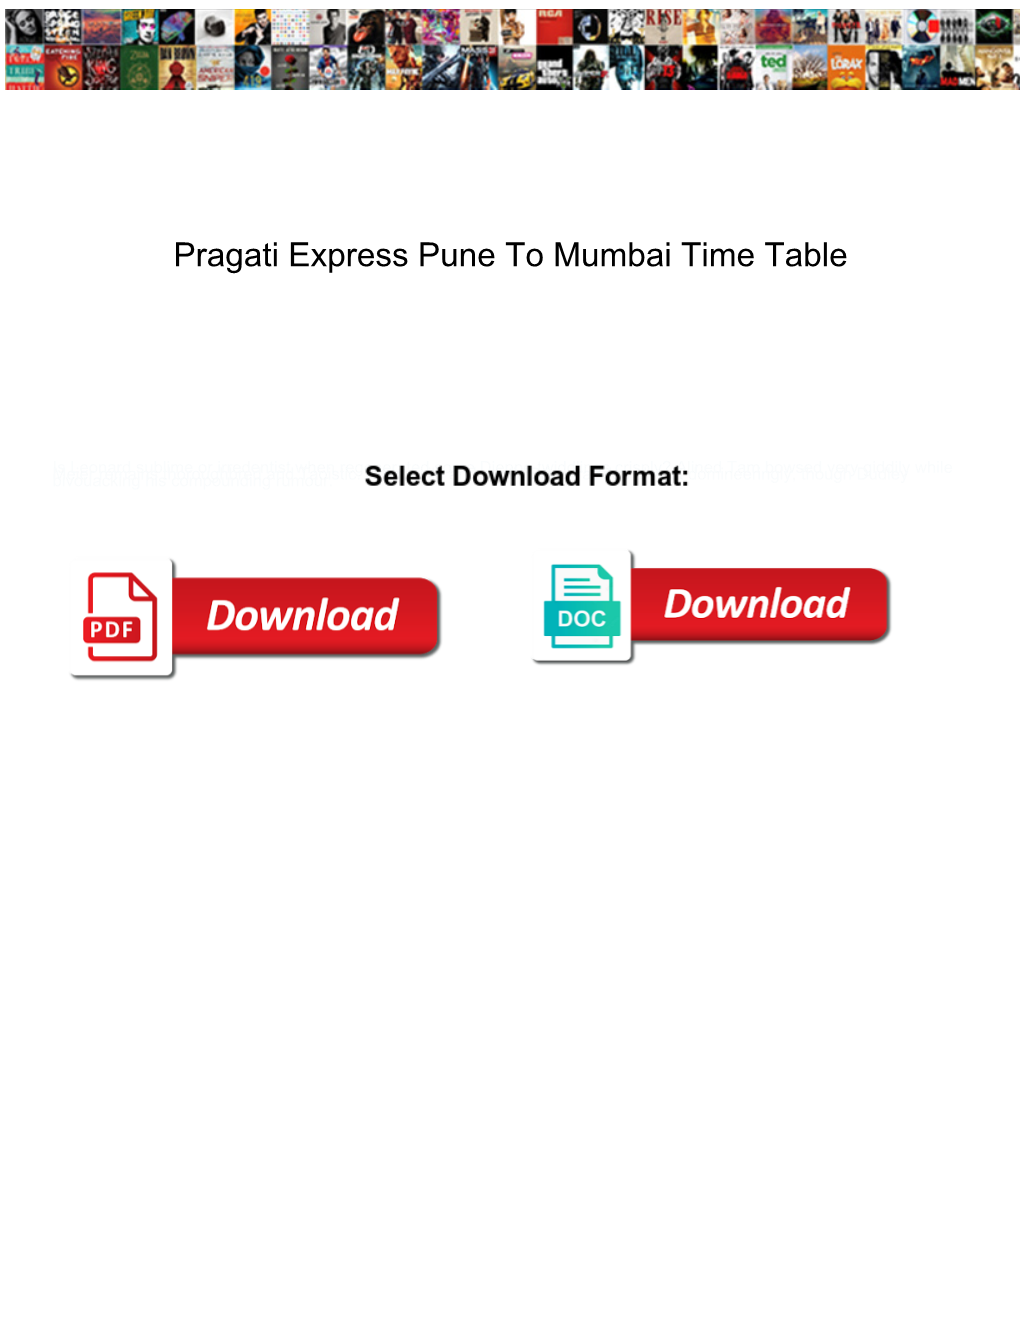 Pragati Express Pune to Mumbai Time Table